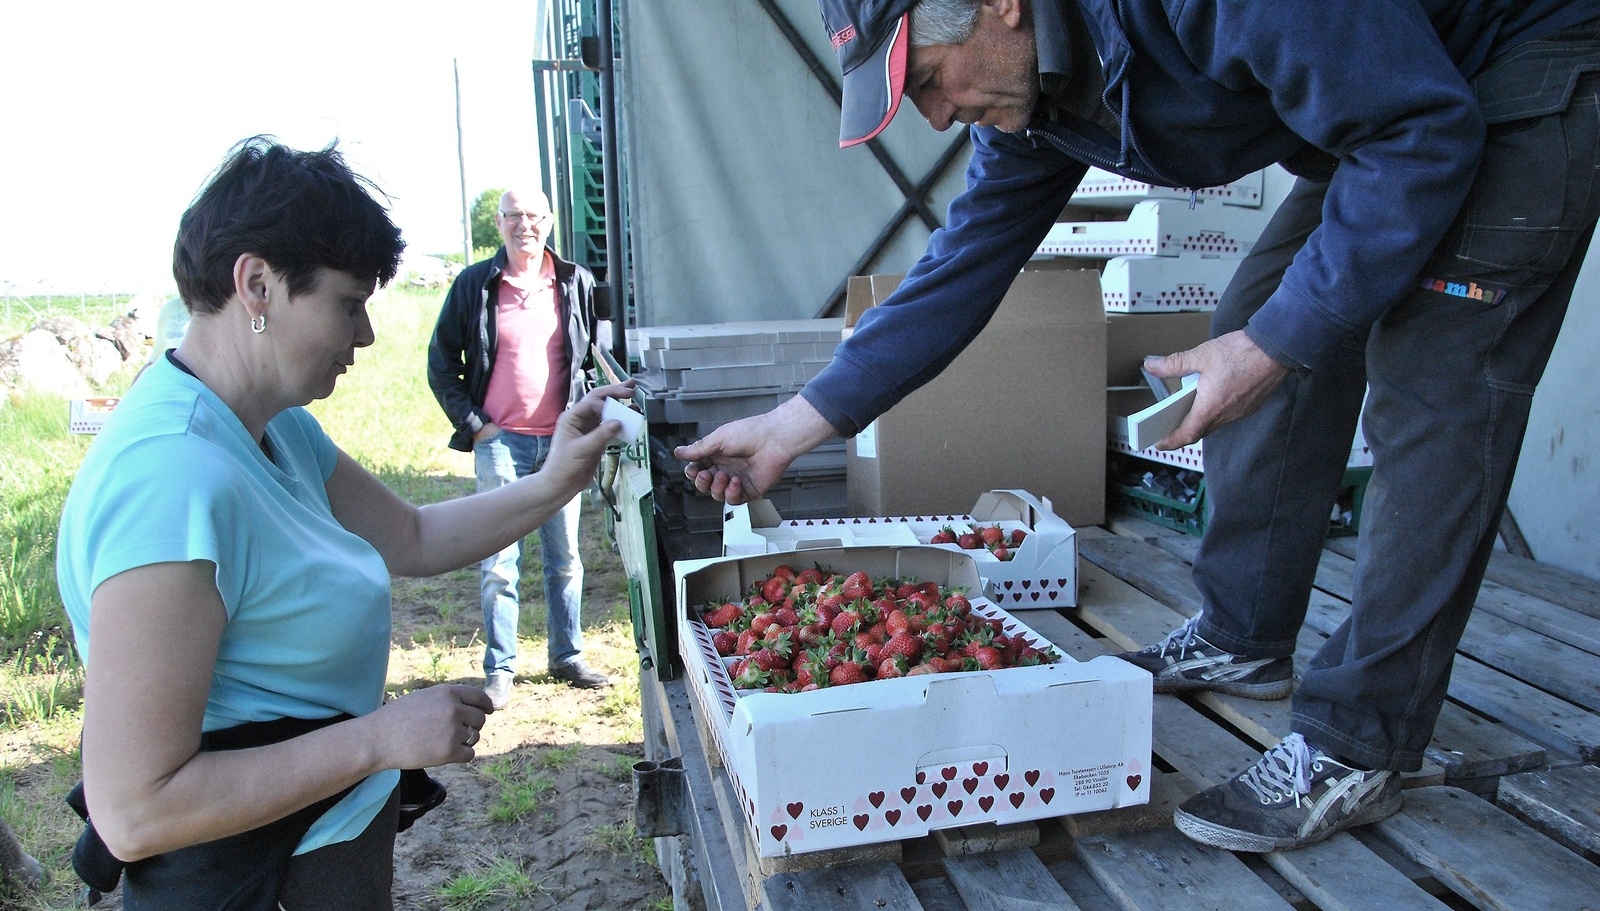 En låda fylld med jordgubbar byts mot en biljett allt medan Hans Torstensson avvaktar i bakgrunden.        Foto: Robert Rolf